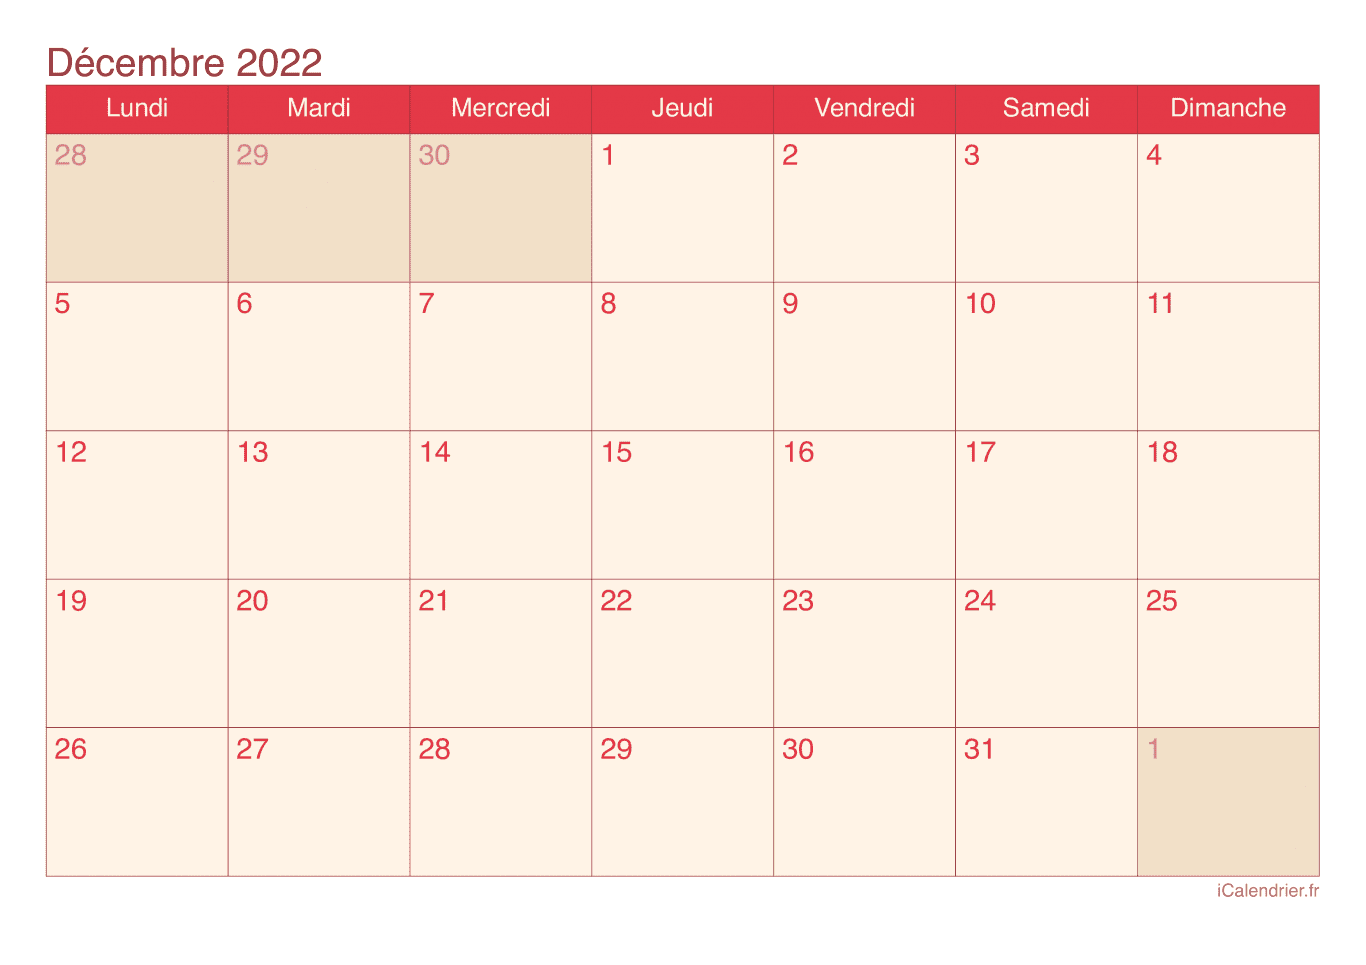 Calendrier de décembre 2022 - Cherry